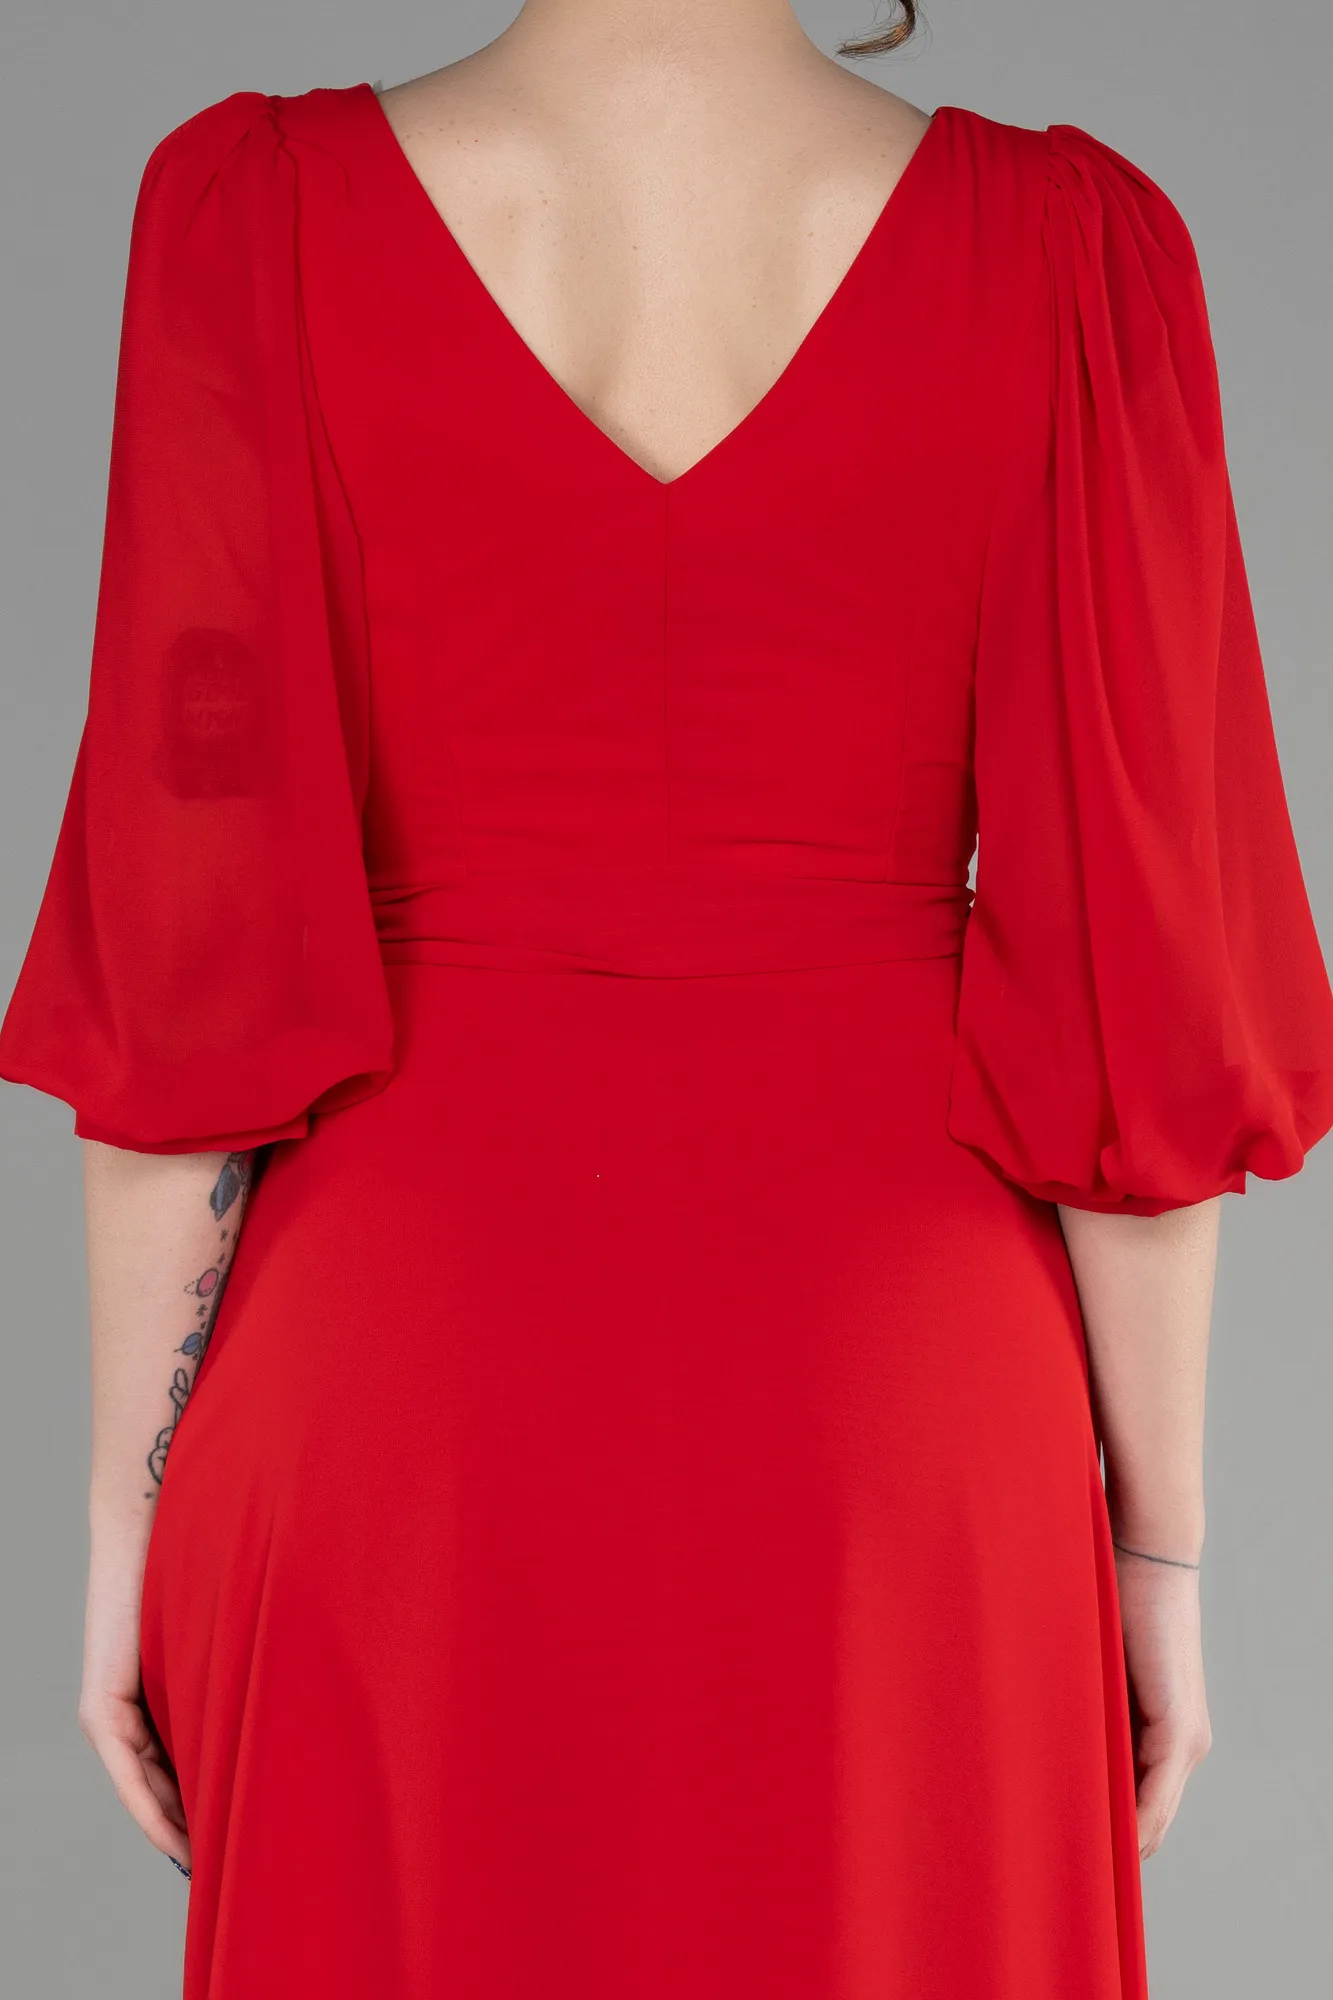 Red-Long Chiffon Invitation Dress ABU1729